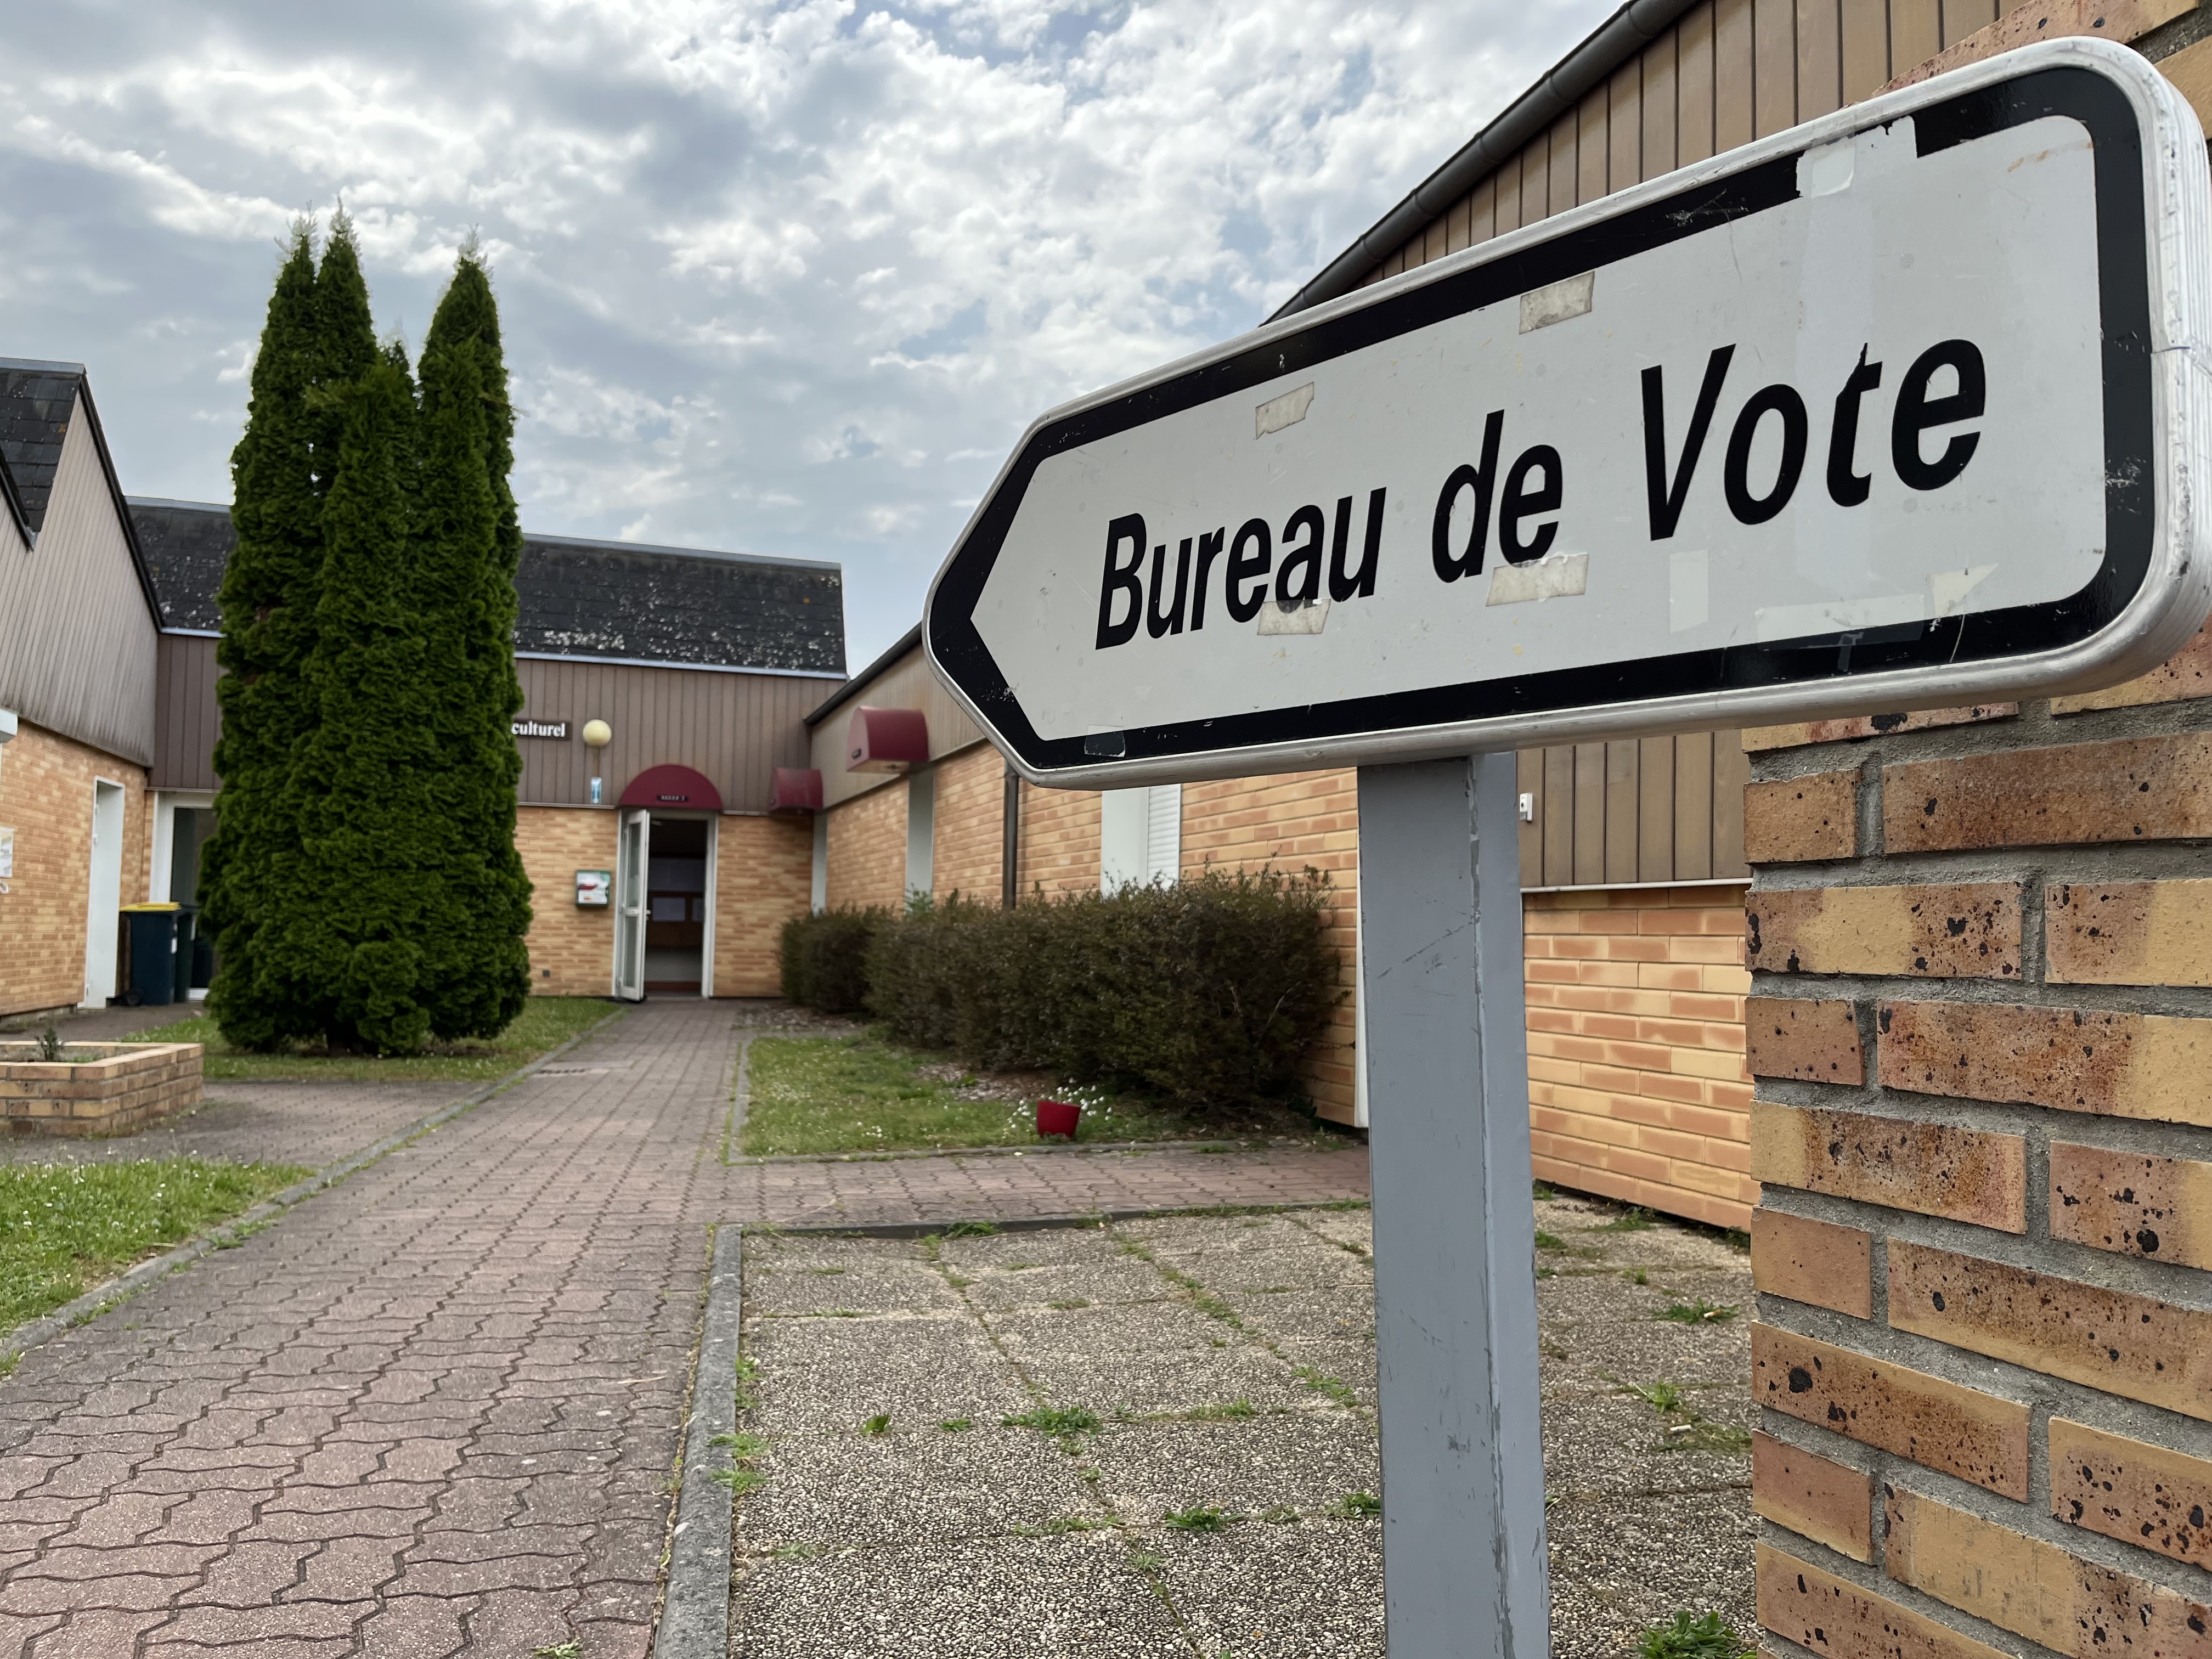 808 bureaux de vote seront ouverts dans le département de l’Eure - infonormandie